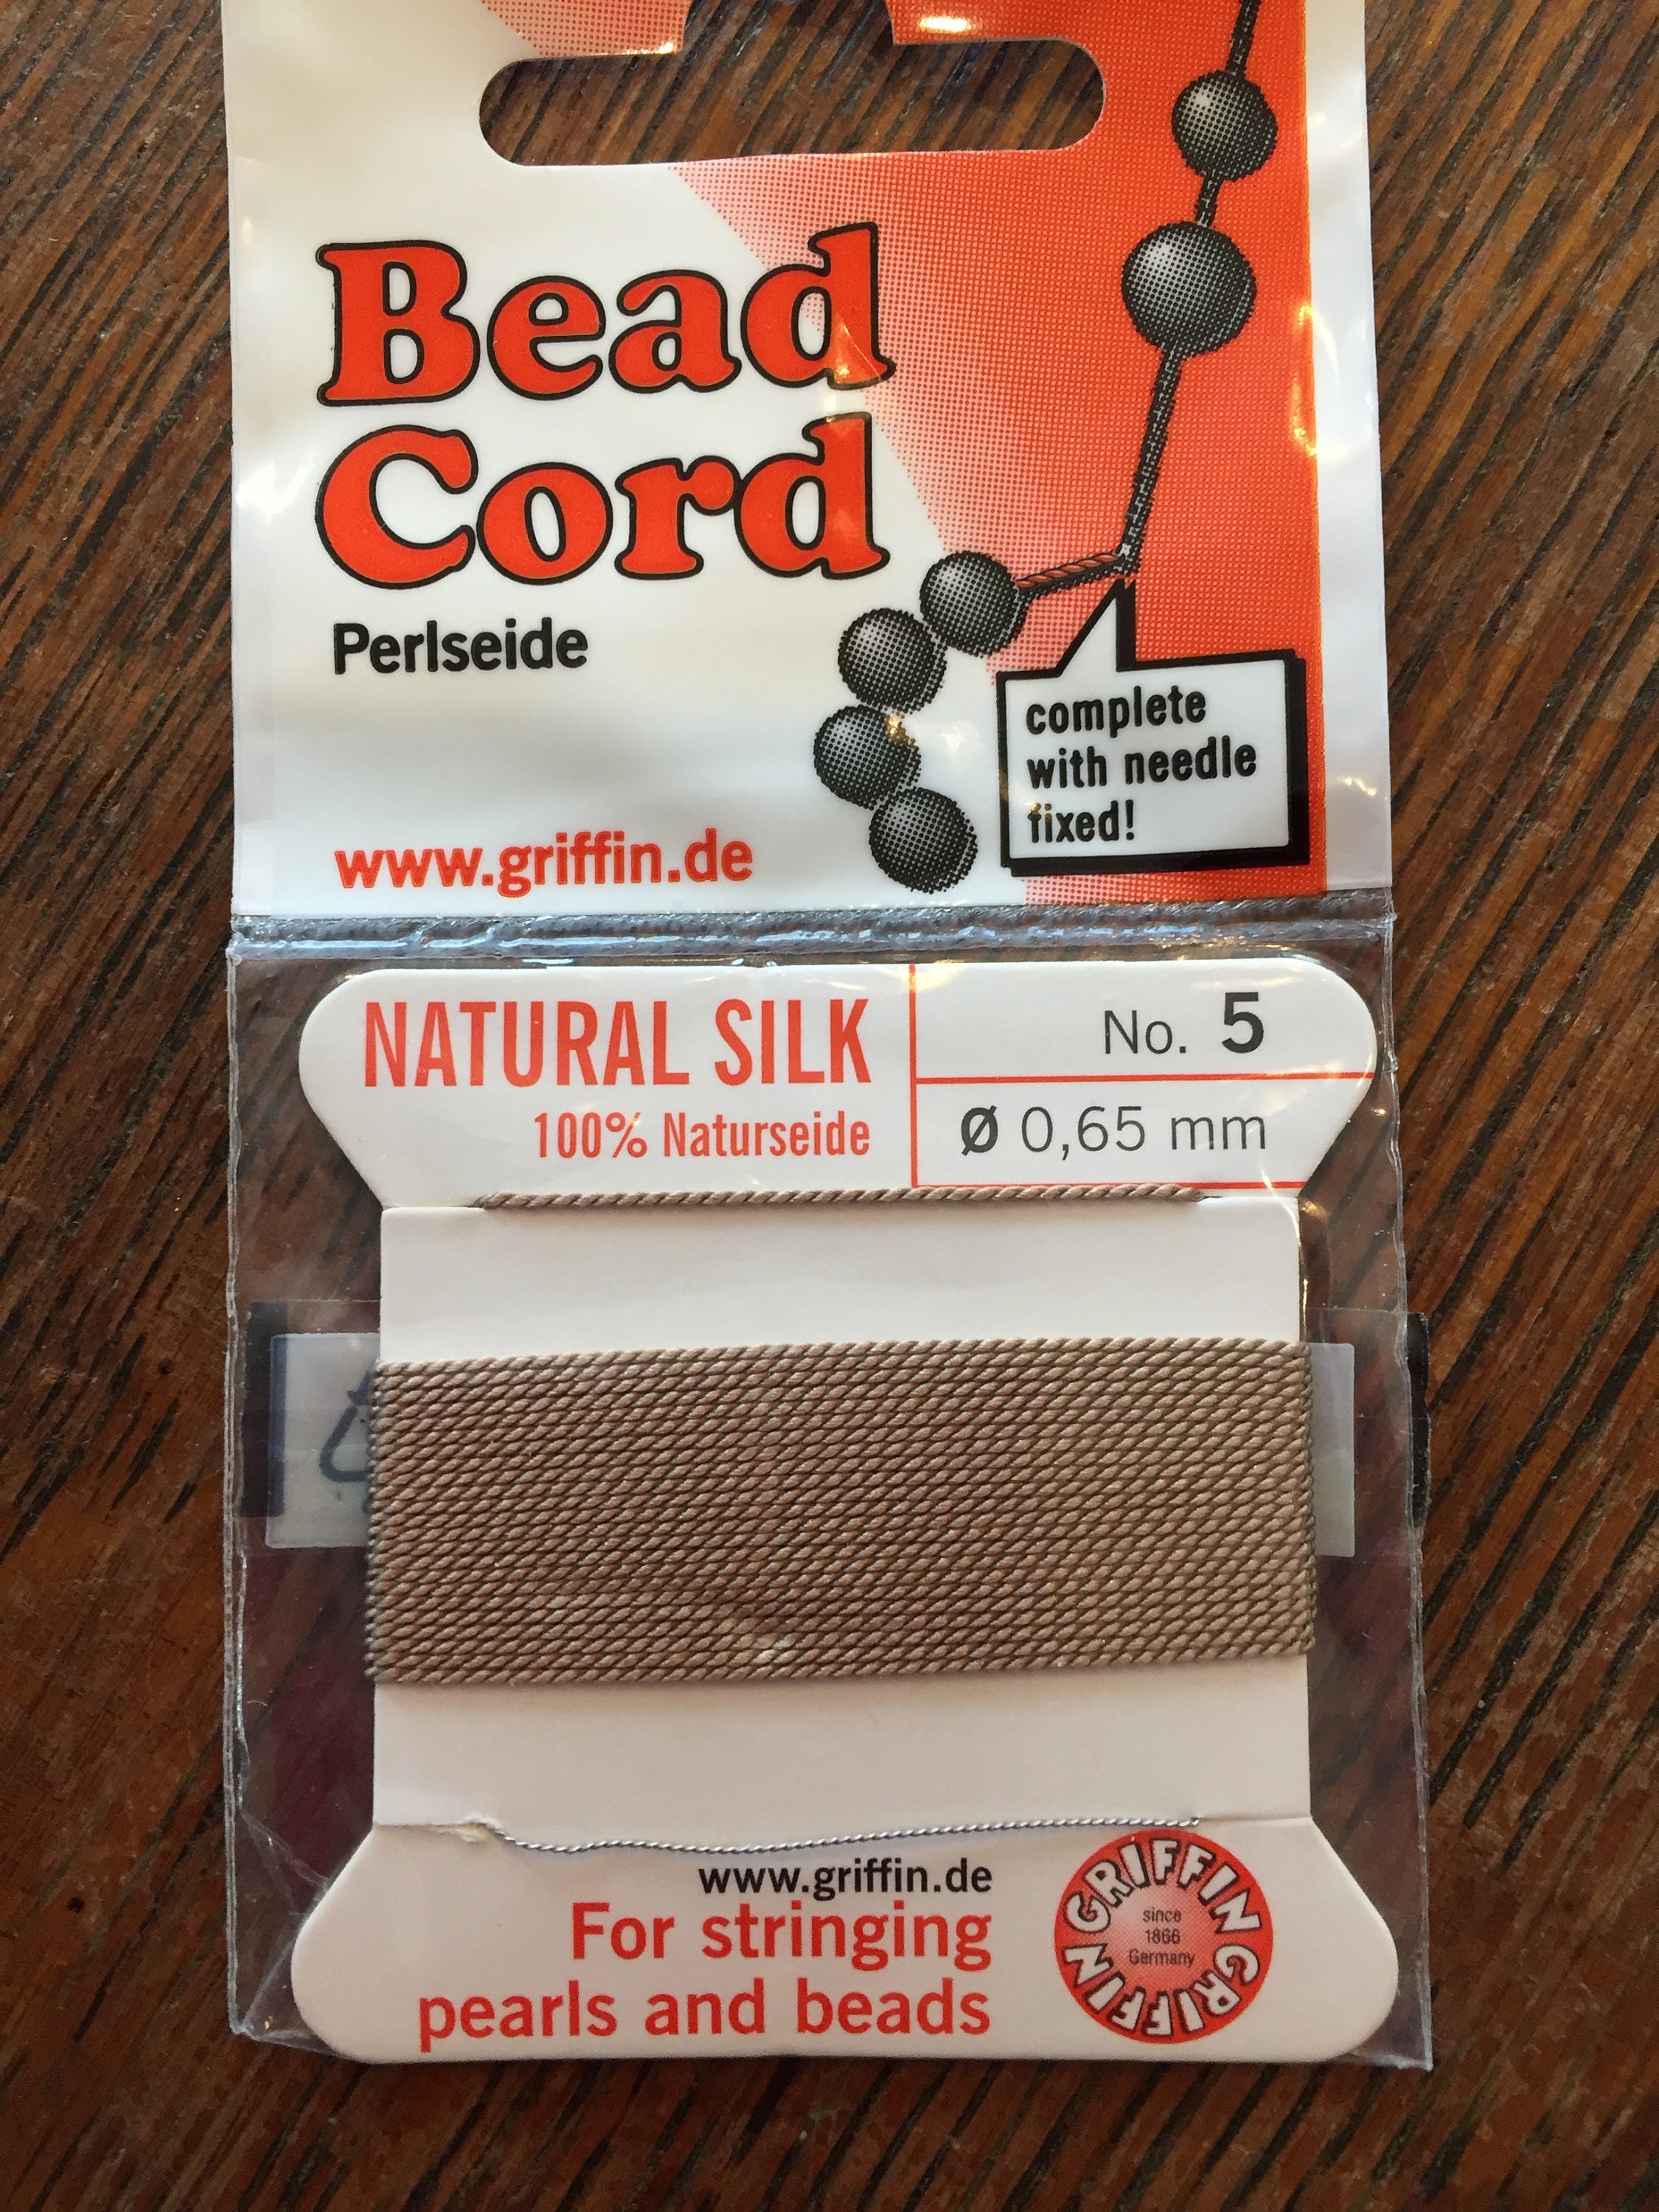 2, 0.45mm Griffin Silk Bead Cord with Needle, Dark Brown – Garden